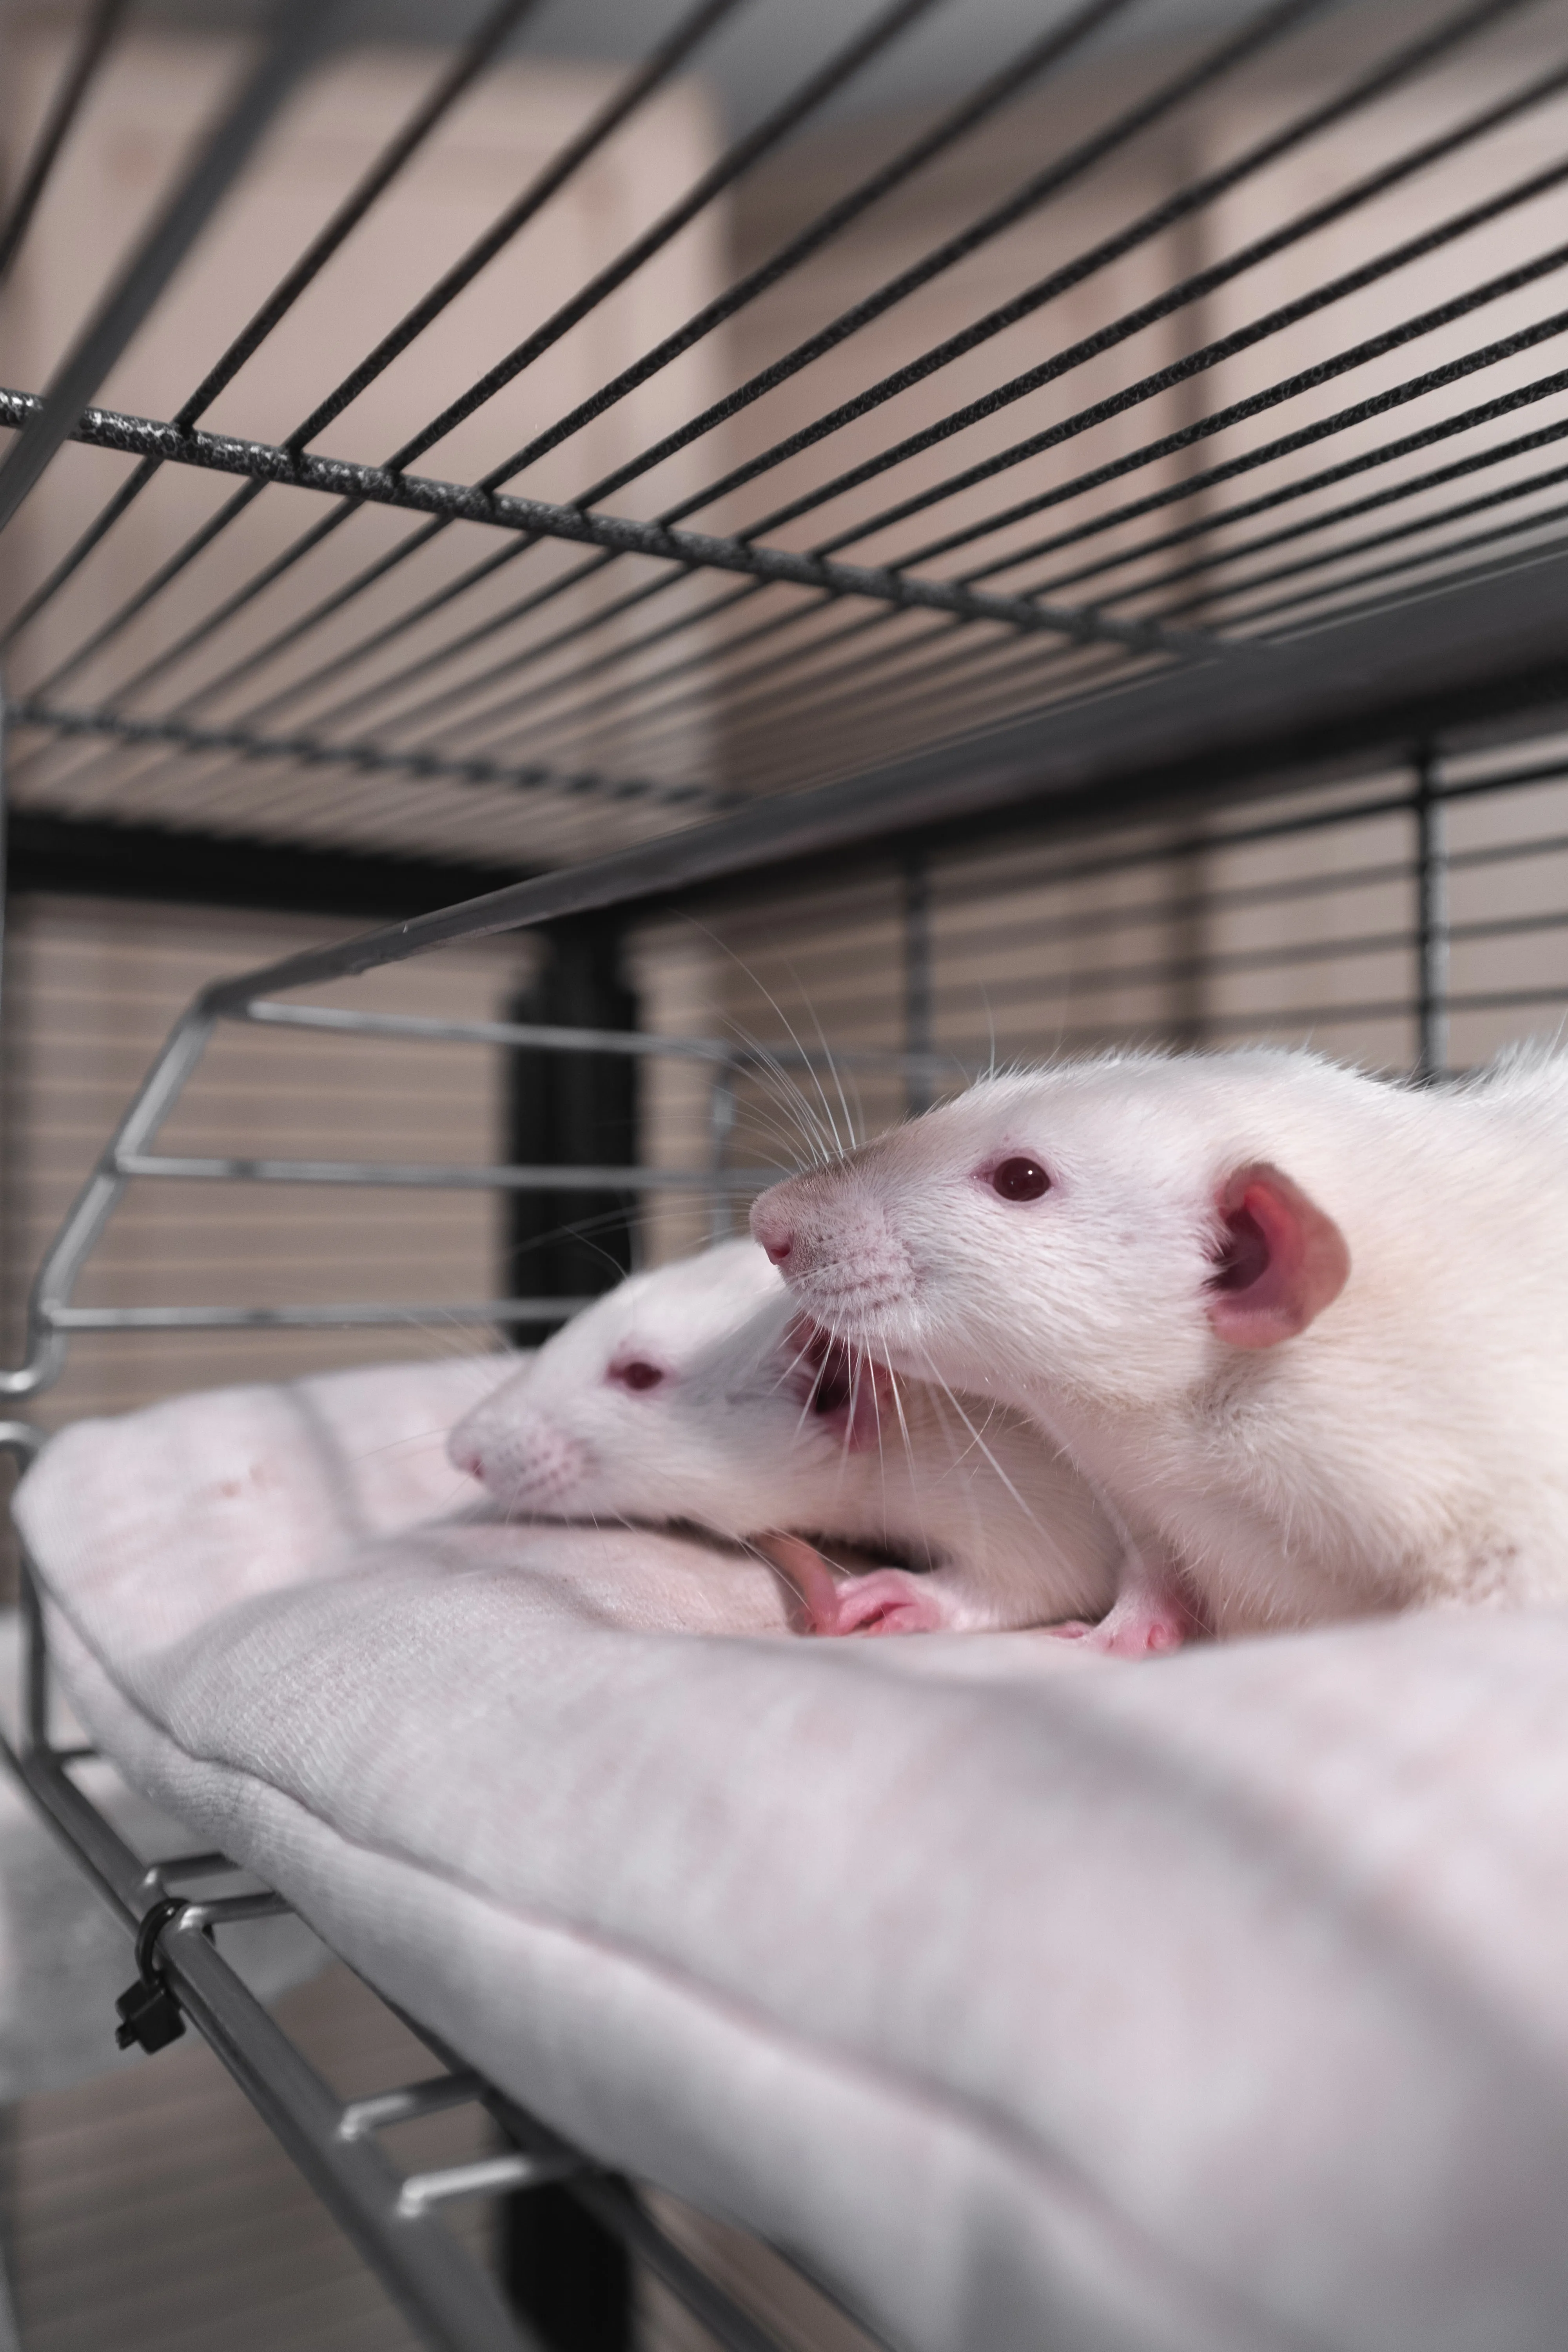 Введение вещества на основе молодой крови свиней омолодило крыс